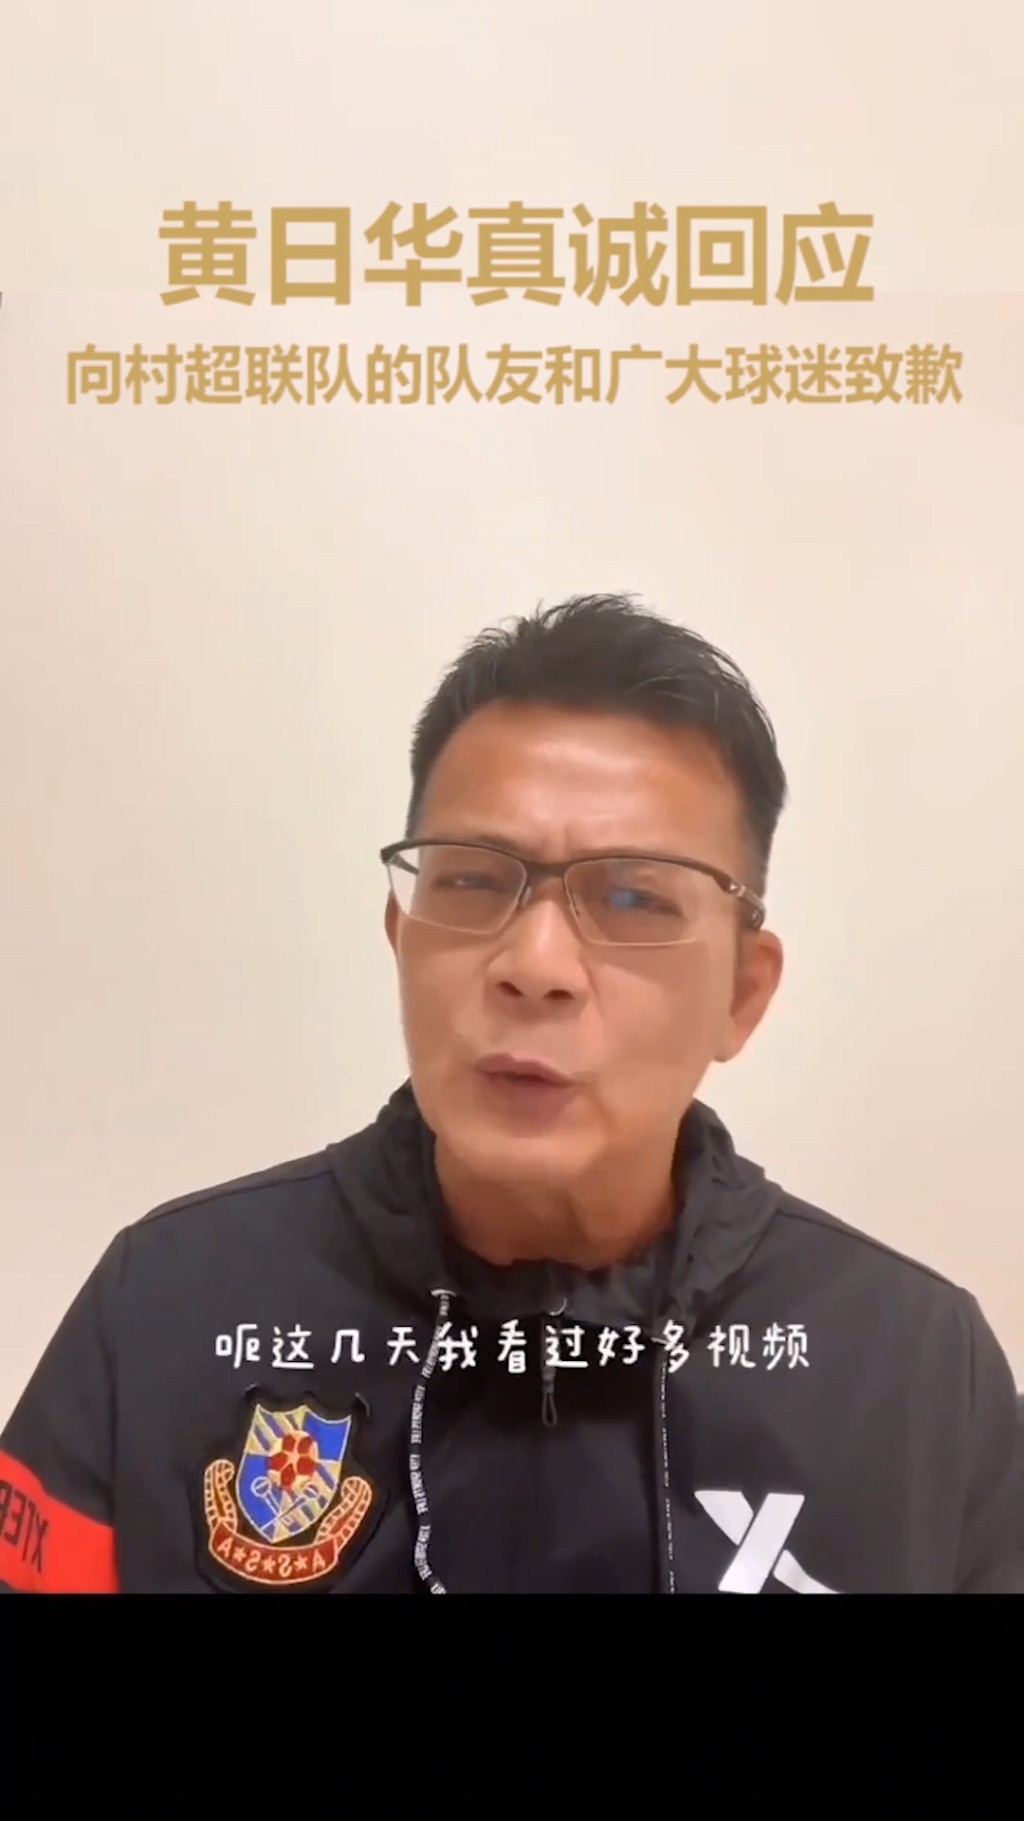 黄日华称这几天看过多好多视频，也看过所有网民的批评，他全部一一接受。